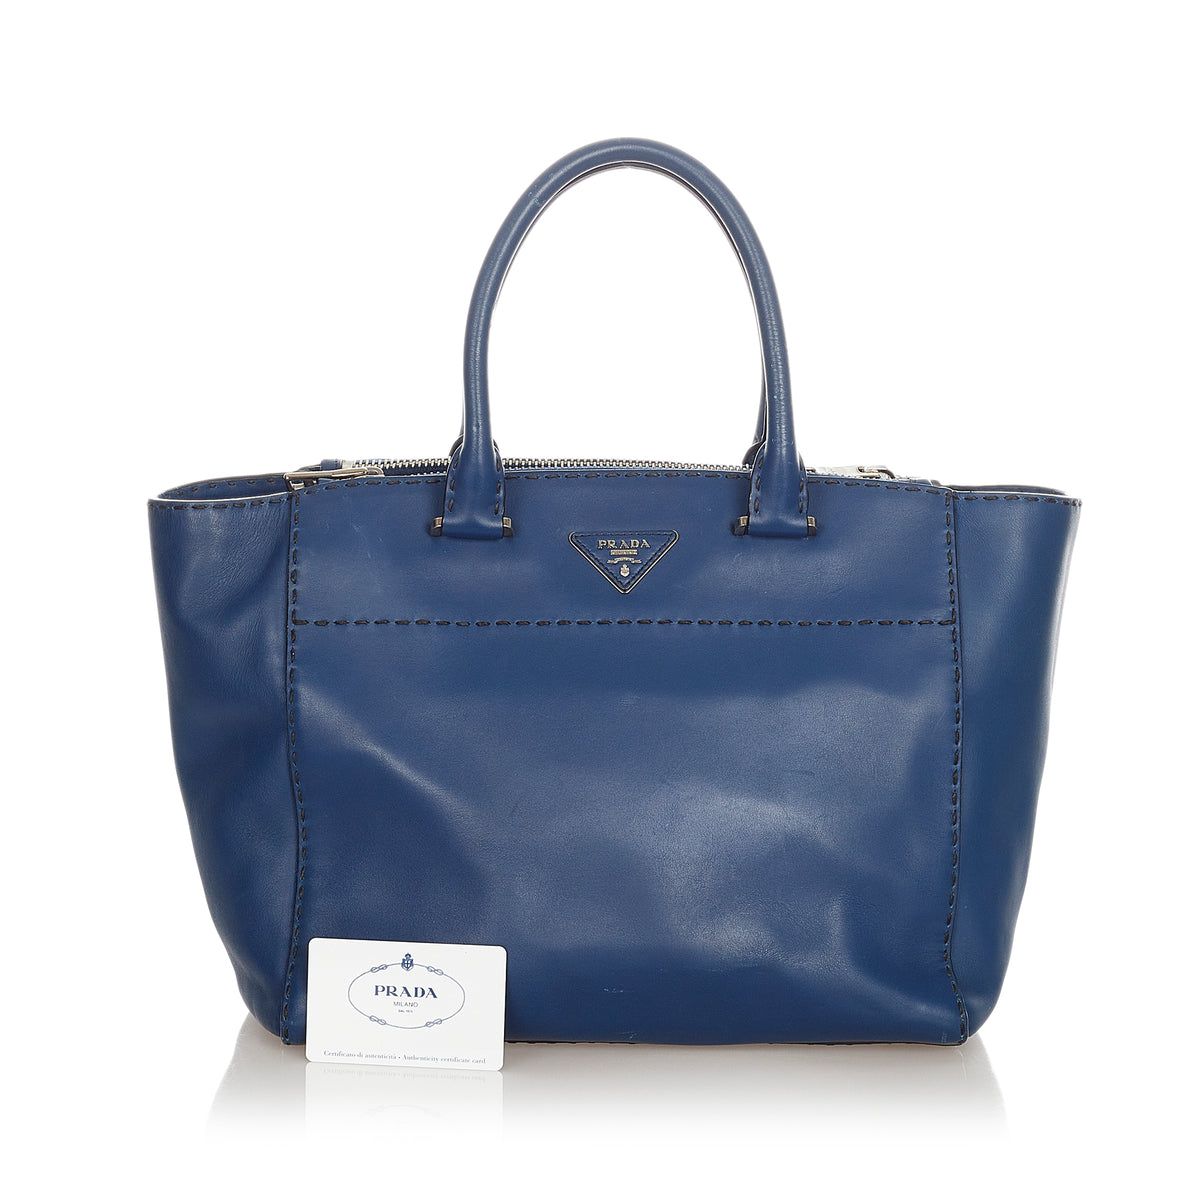 Preloved Prada Blue Caflskin Stitched Tote Bag 208 050323 - $150 OFF DEAL